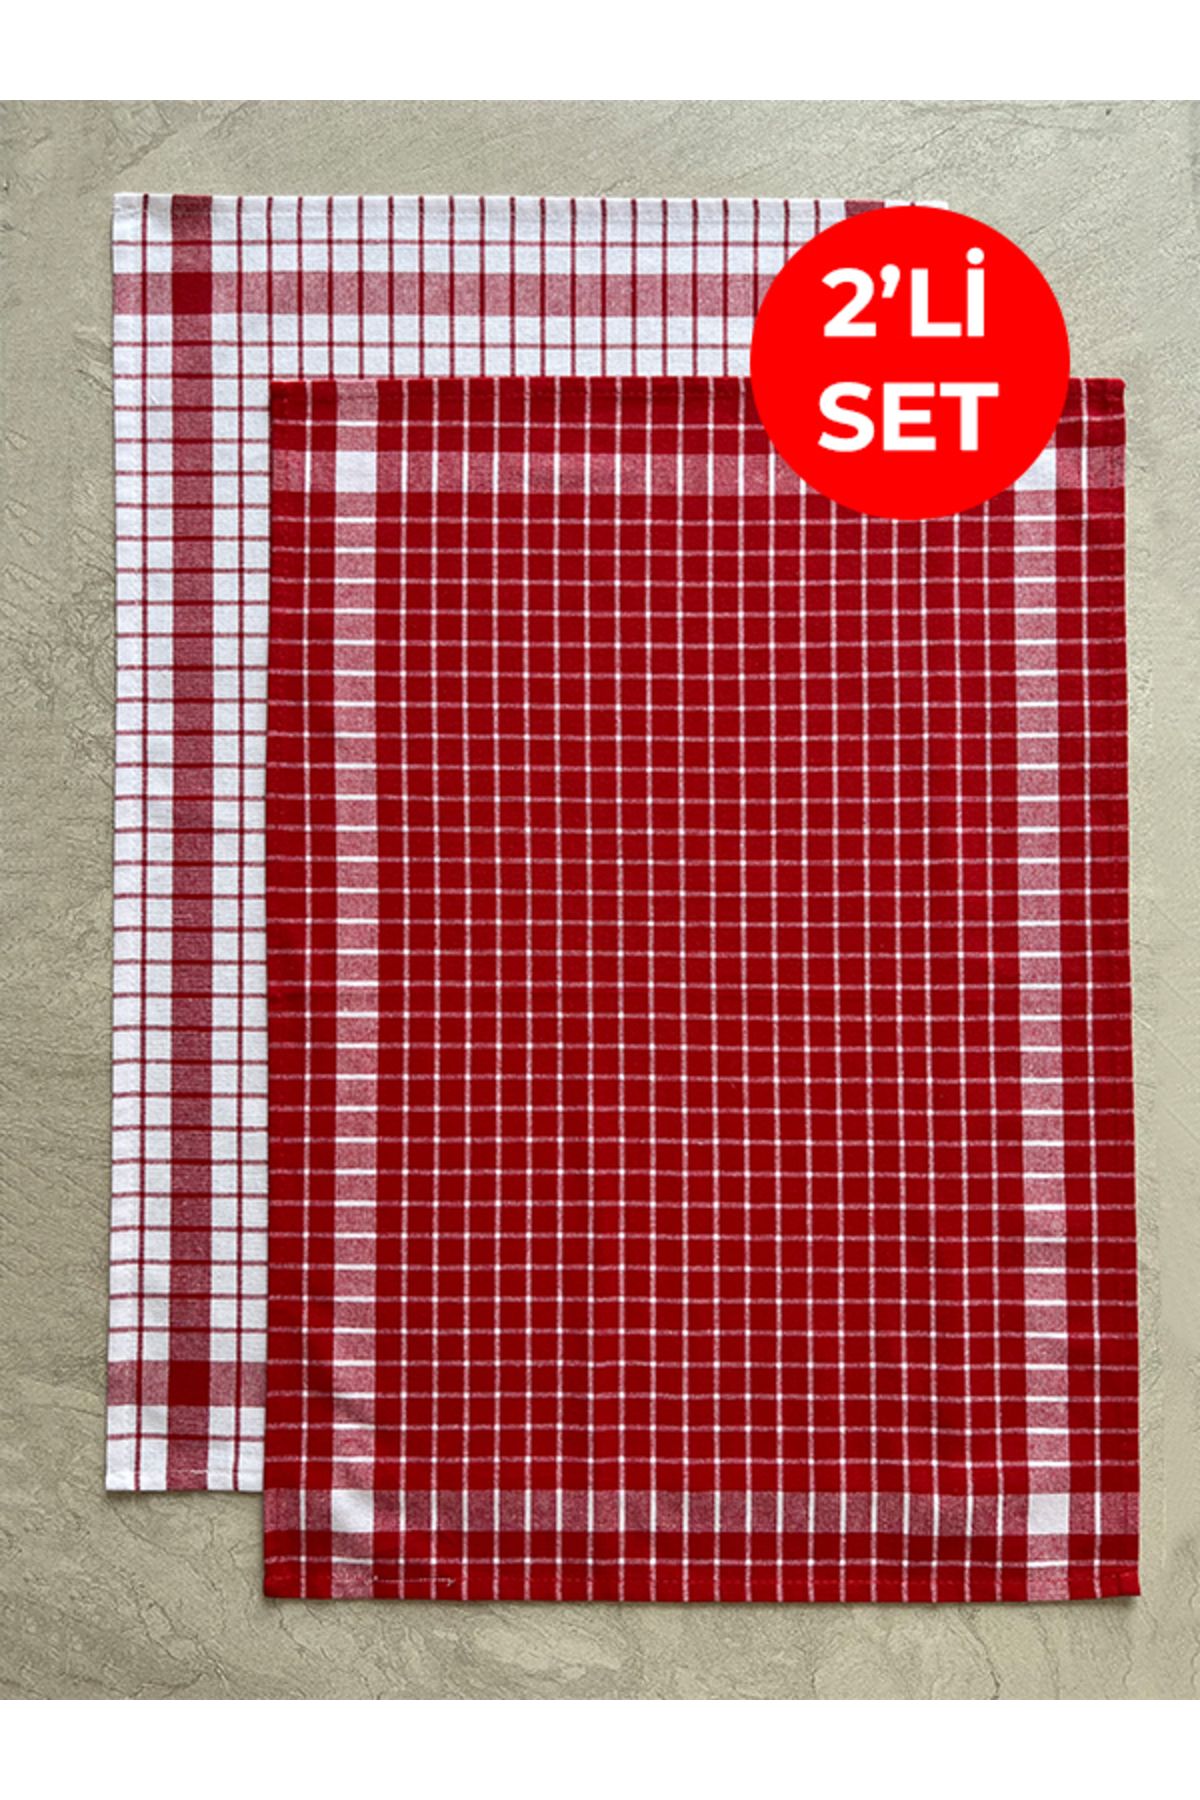 Tuable Kareli 2'li Mutfak Kurulama Bezi Set 45x65cm Kırmızı/Beyaz